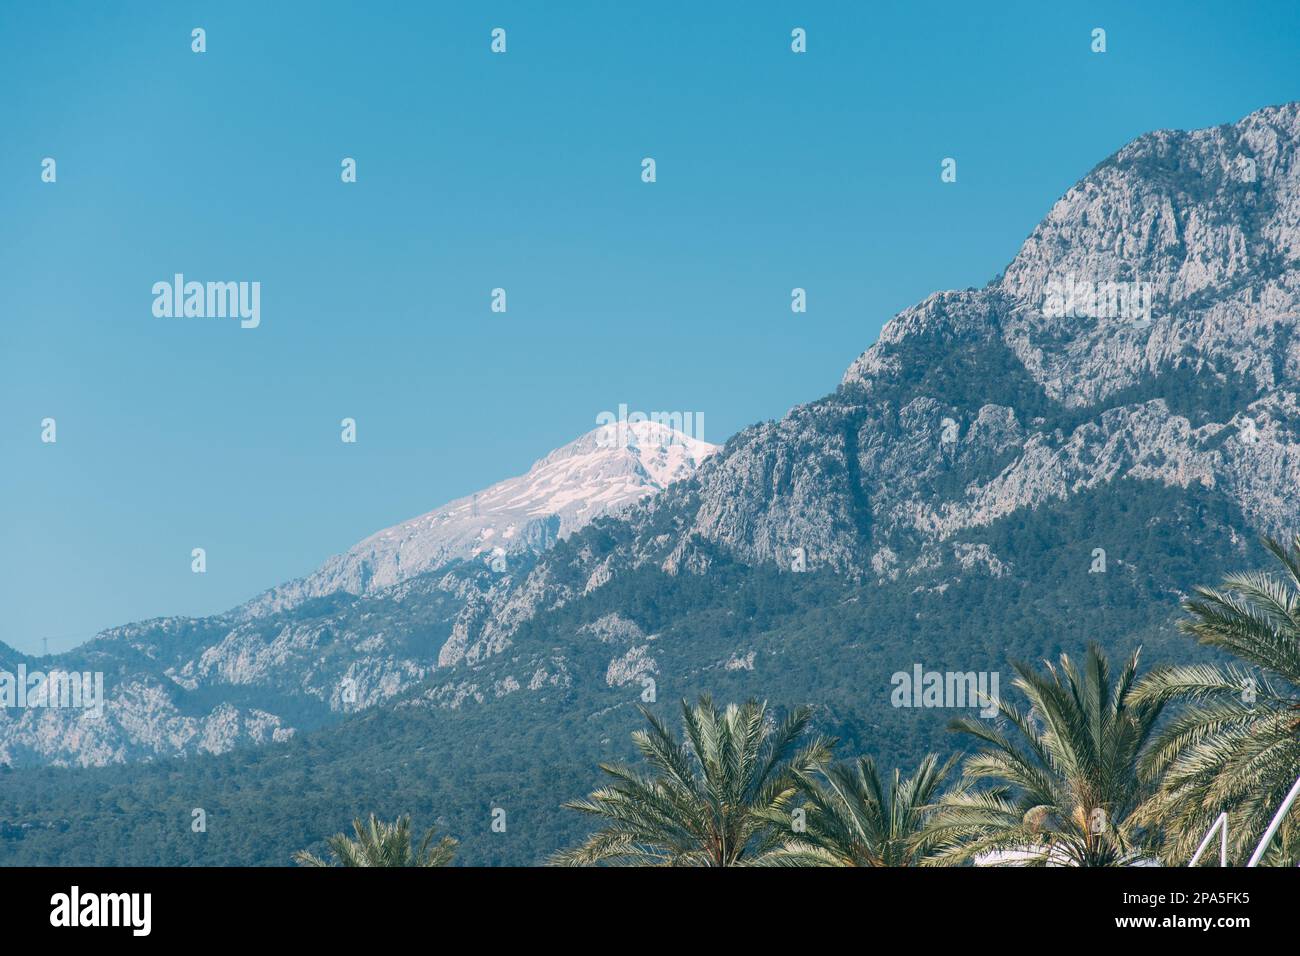 Imagen horizontal del paisaje de una montaña cubierta de nieve con una palmera en primer plano agradable Foto de stock